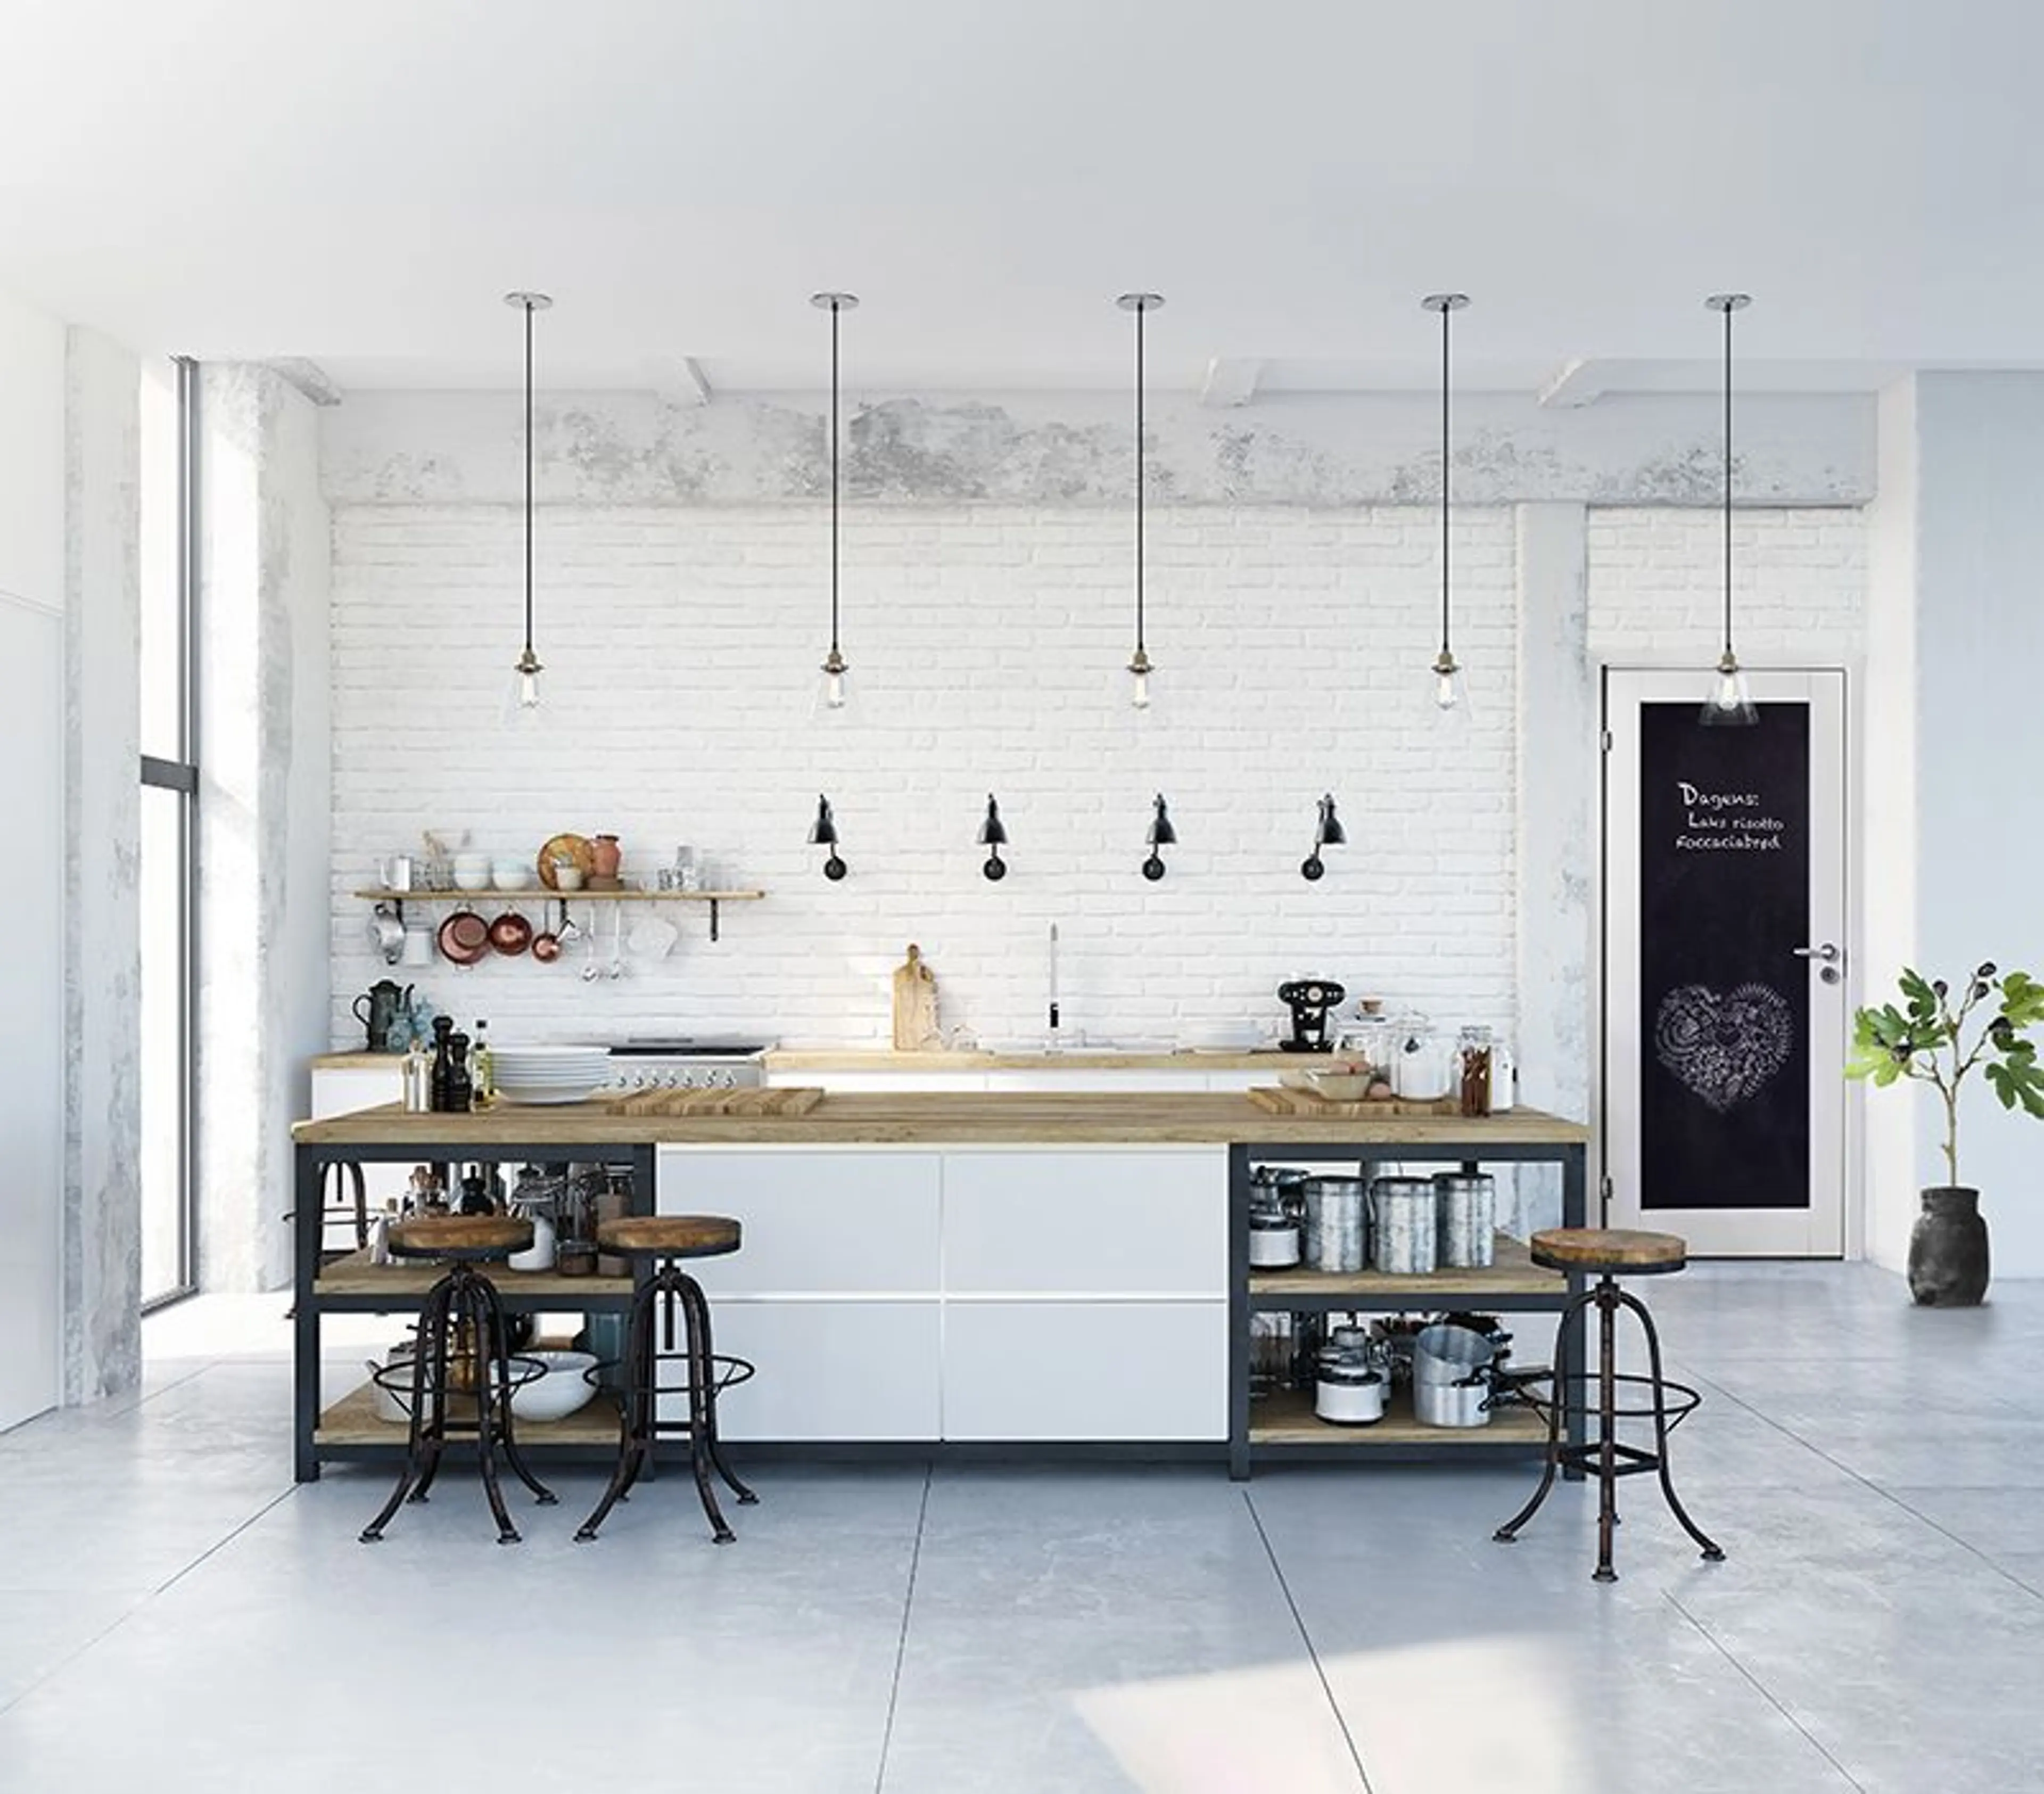 Hvitt kjøkken i mur og tre, innerdør med tavlemaling